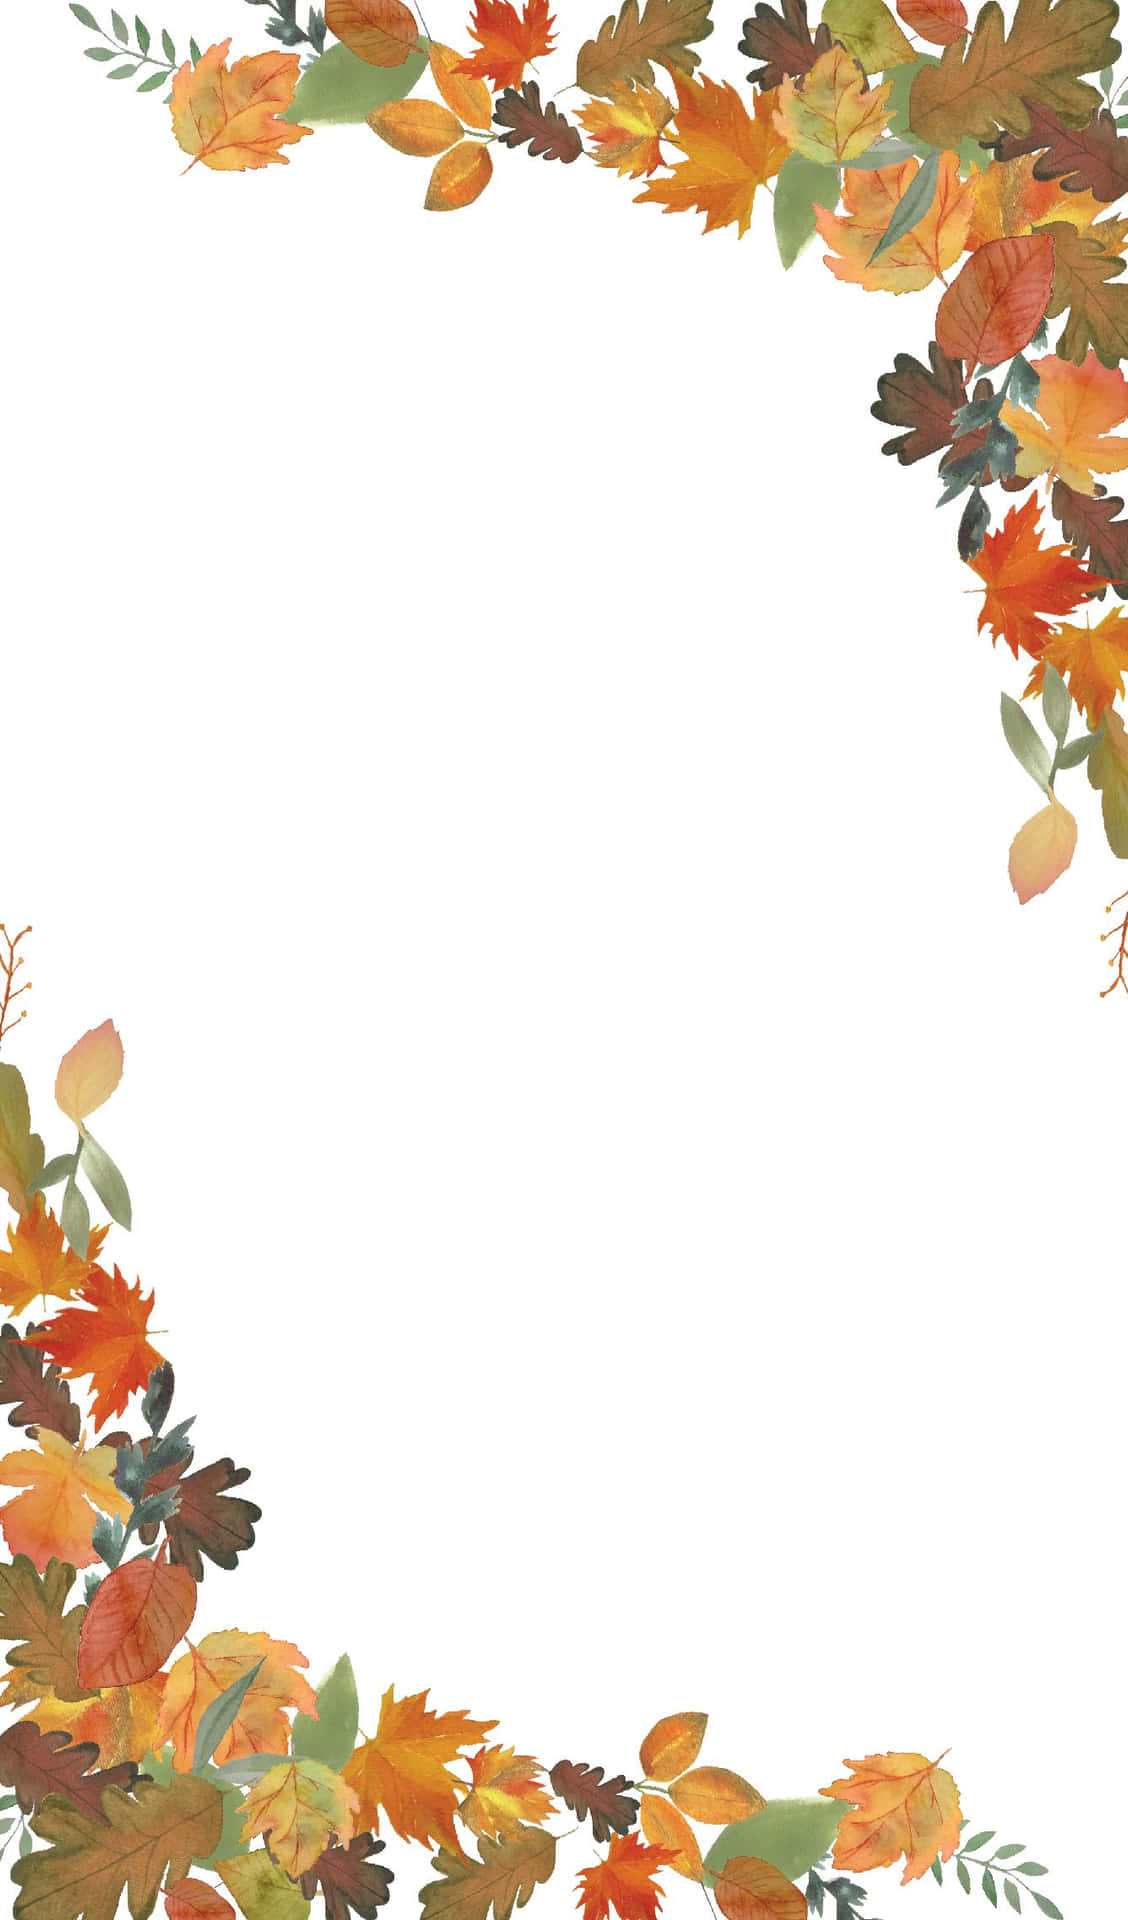 Fangensie Eine Schöne Und Lebhafte Herbstsaison Mit Diesem Klaren, Lebendigen Foto Von Herbstblättern Ein. Wallpaper